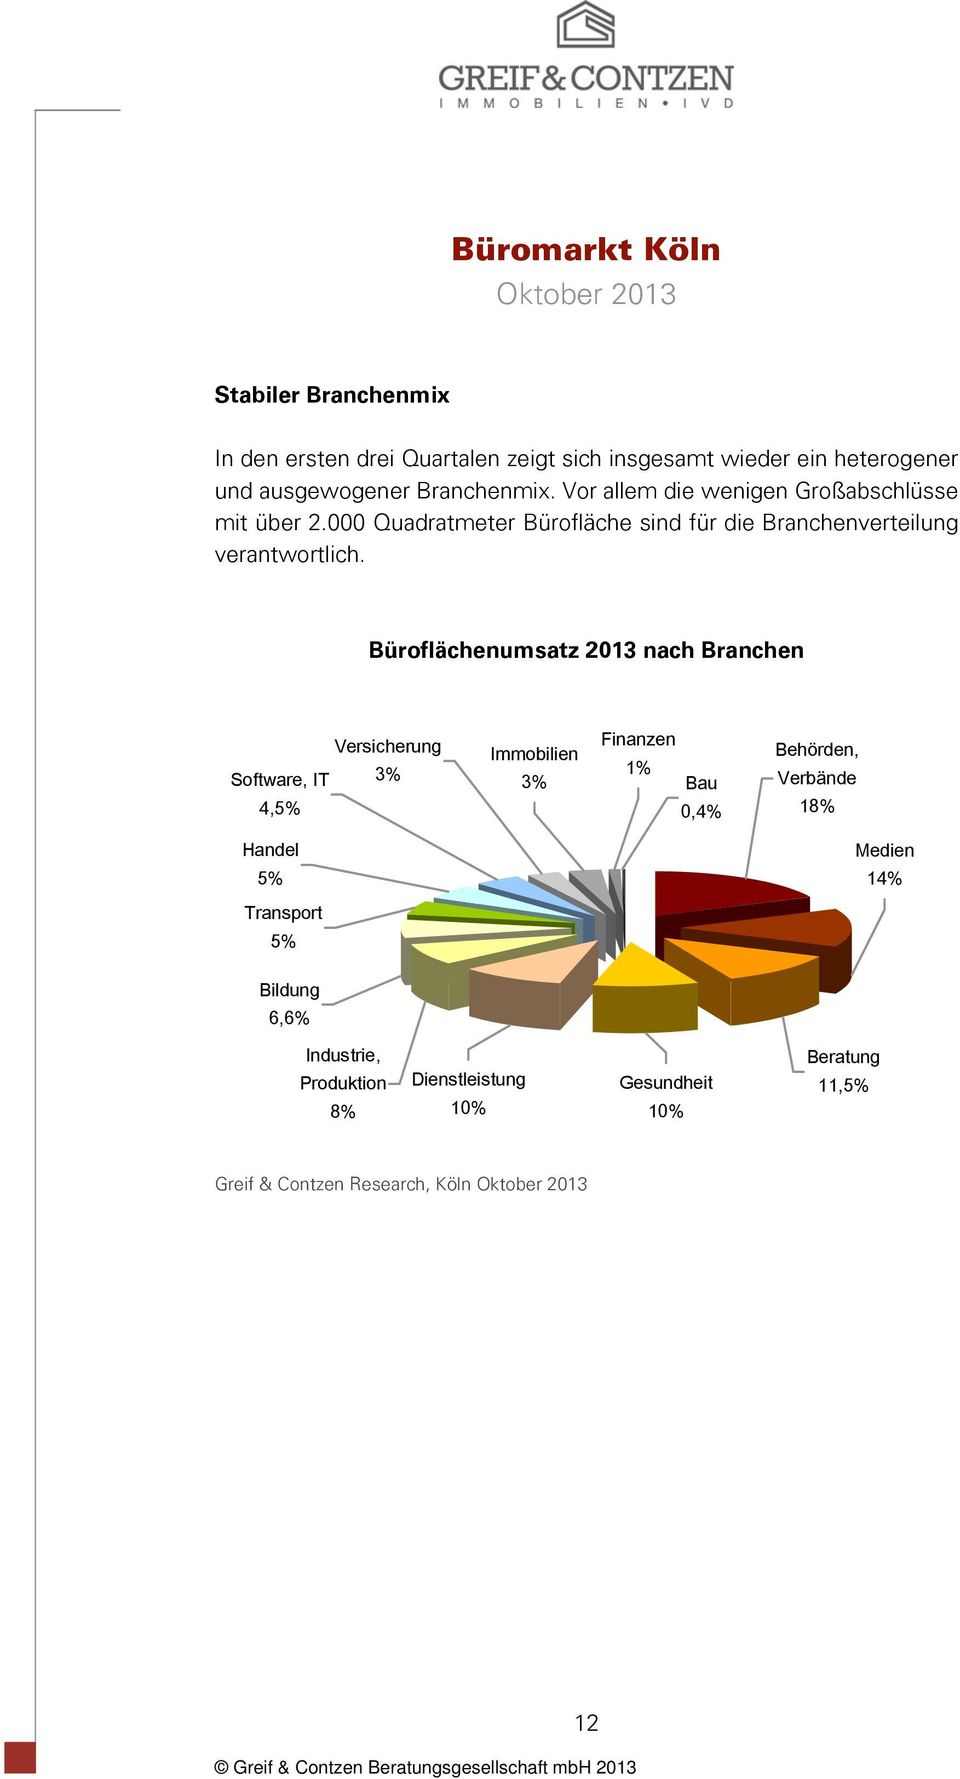 Büroflächenumsatz 2013 nach Branchen Versicherung Software, IT 3% 4,5% Immobilien 3% Finanzen 1% Bau 0,4% Behörden, Verbände 18%